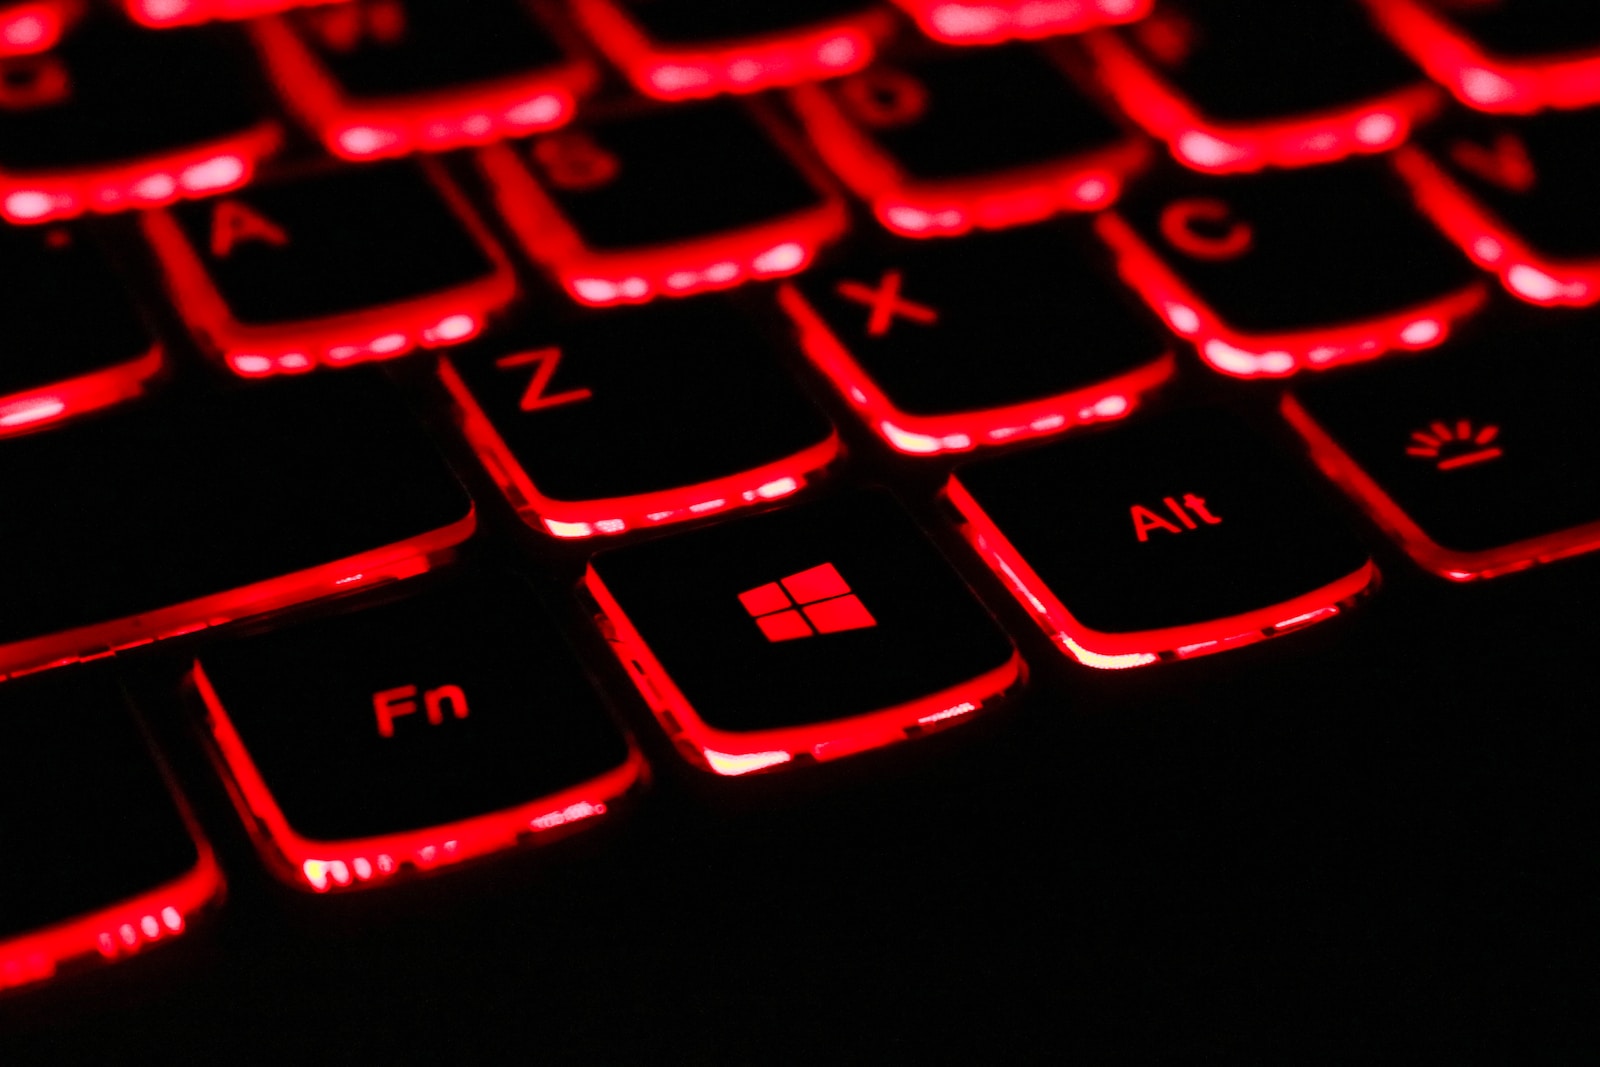 Un clavier rétro éclairé permet de voir les touches dans l'obscurité